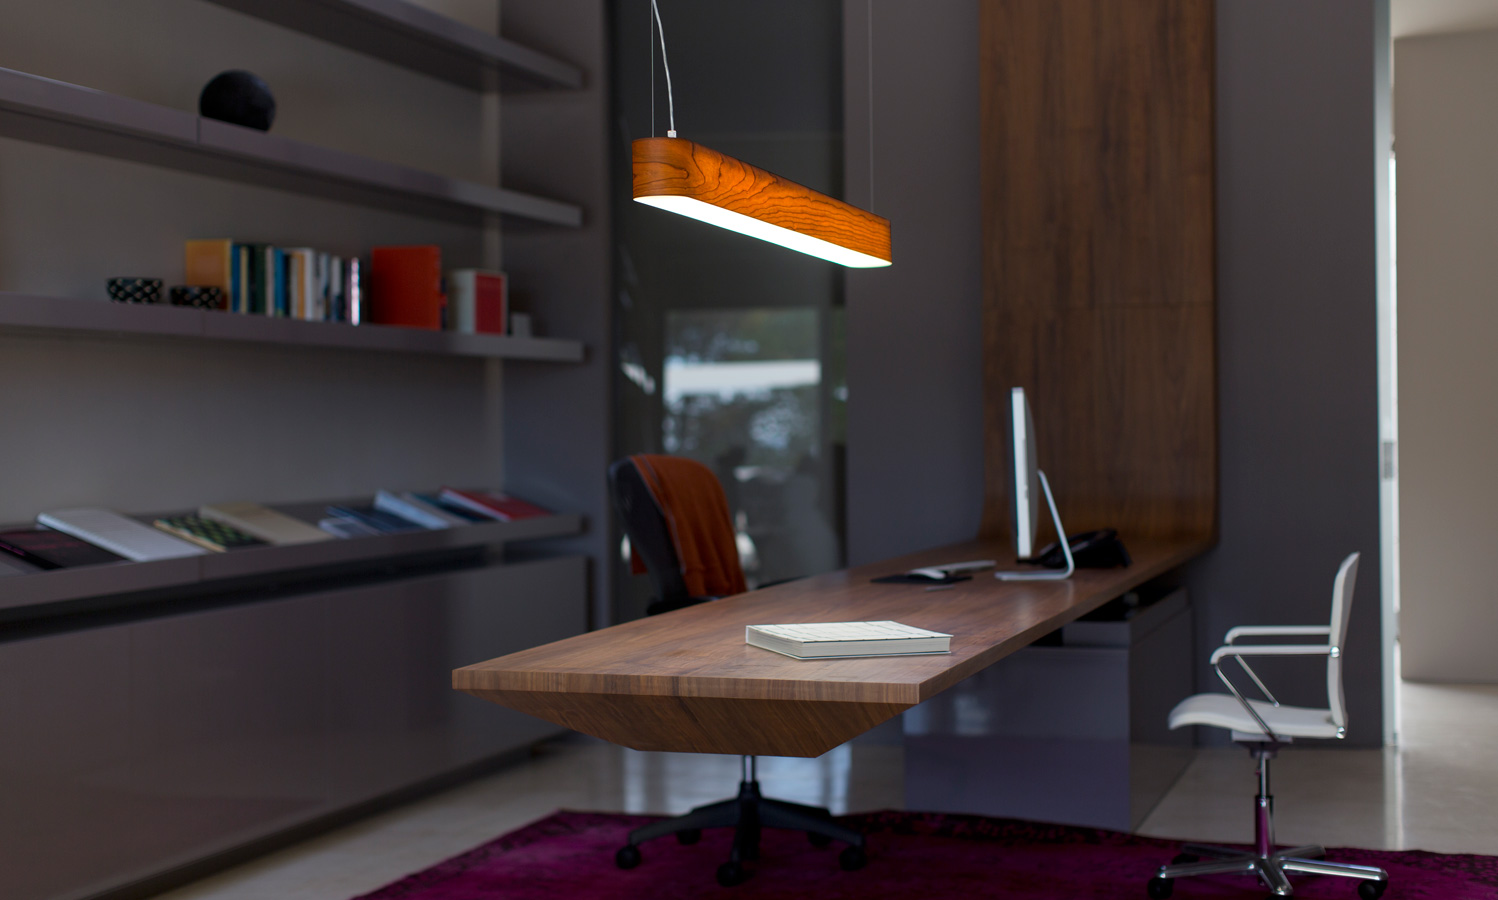 lzf-wood-lamps-iclub-desk1